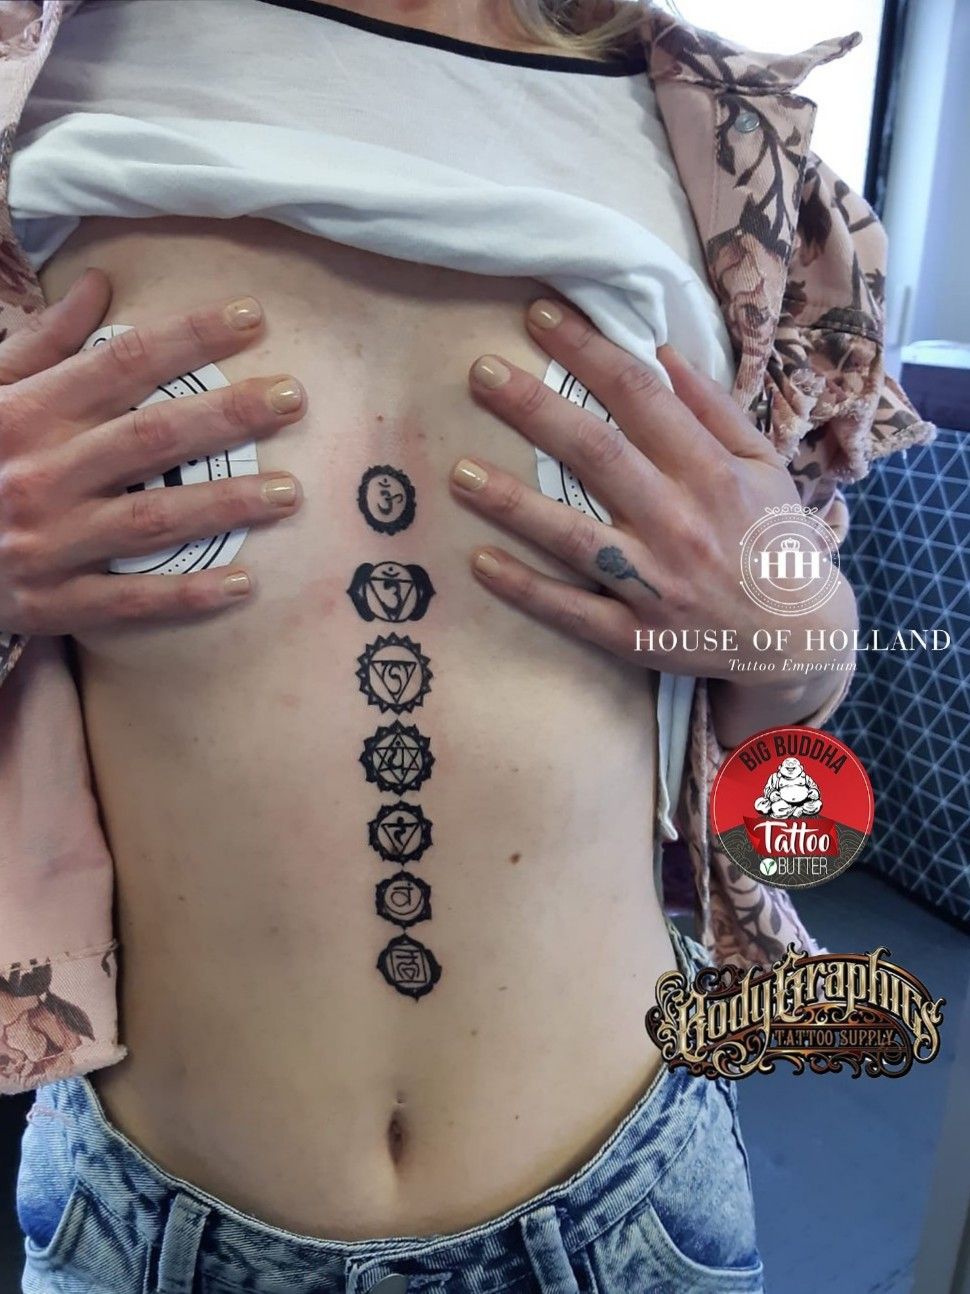 Second session by Martin at chakra tattoo : r/tattoo